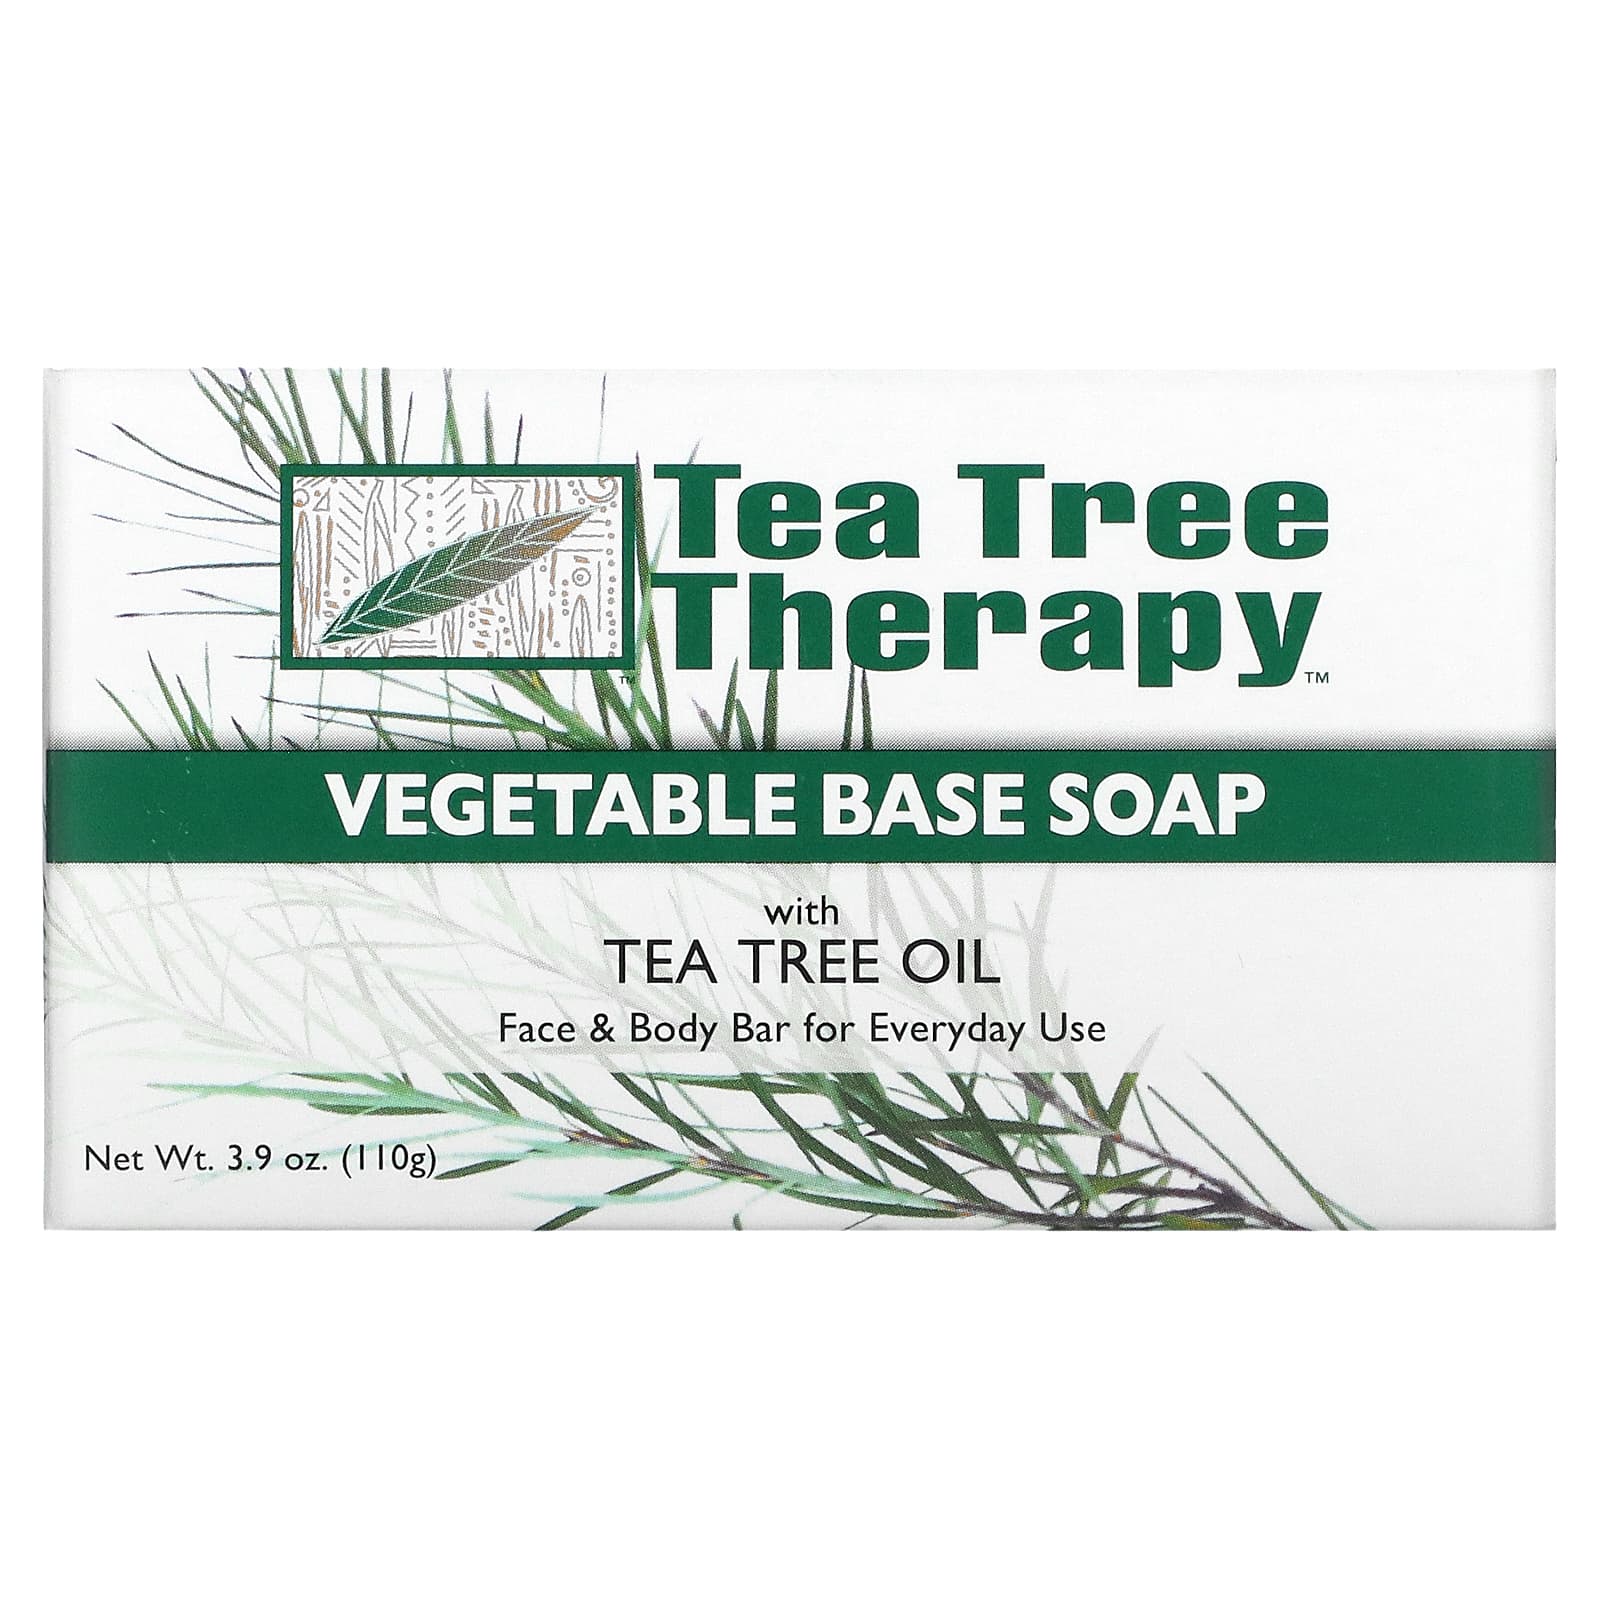 Tea Tree Therapy Мыло на растительной основе с маслом чайного дерева брусок 3.9 унций (110 г) tea tree therapy зубочистки с корицей около 100 шт